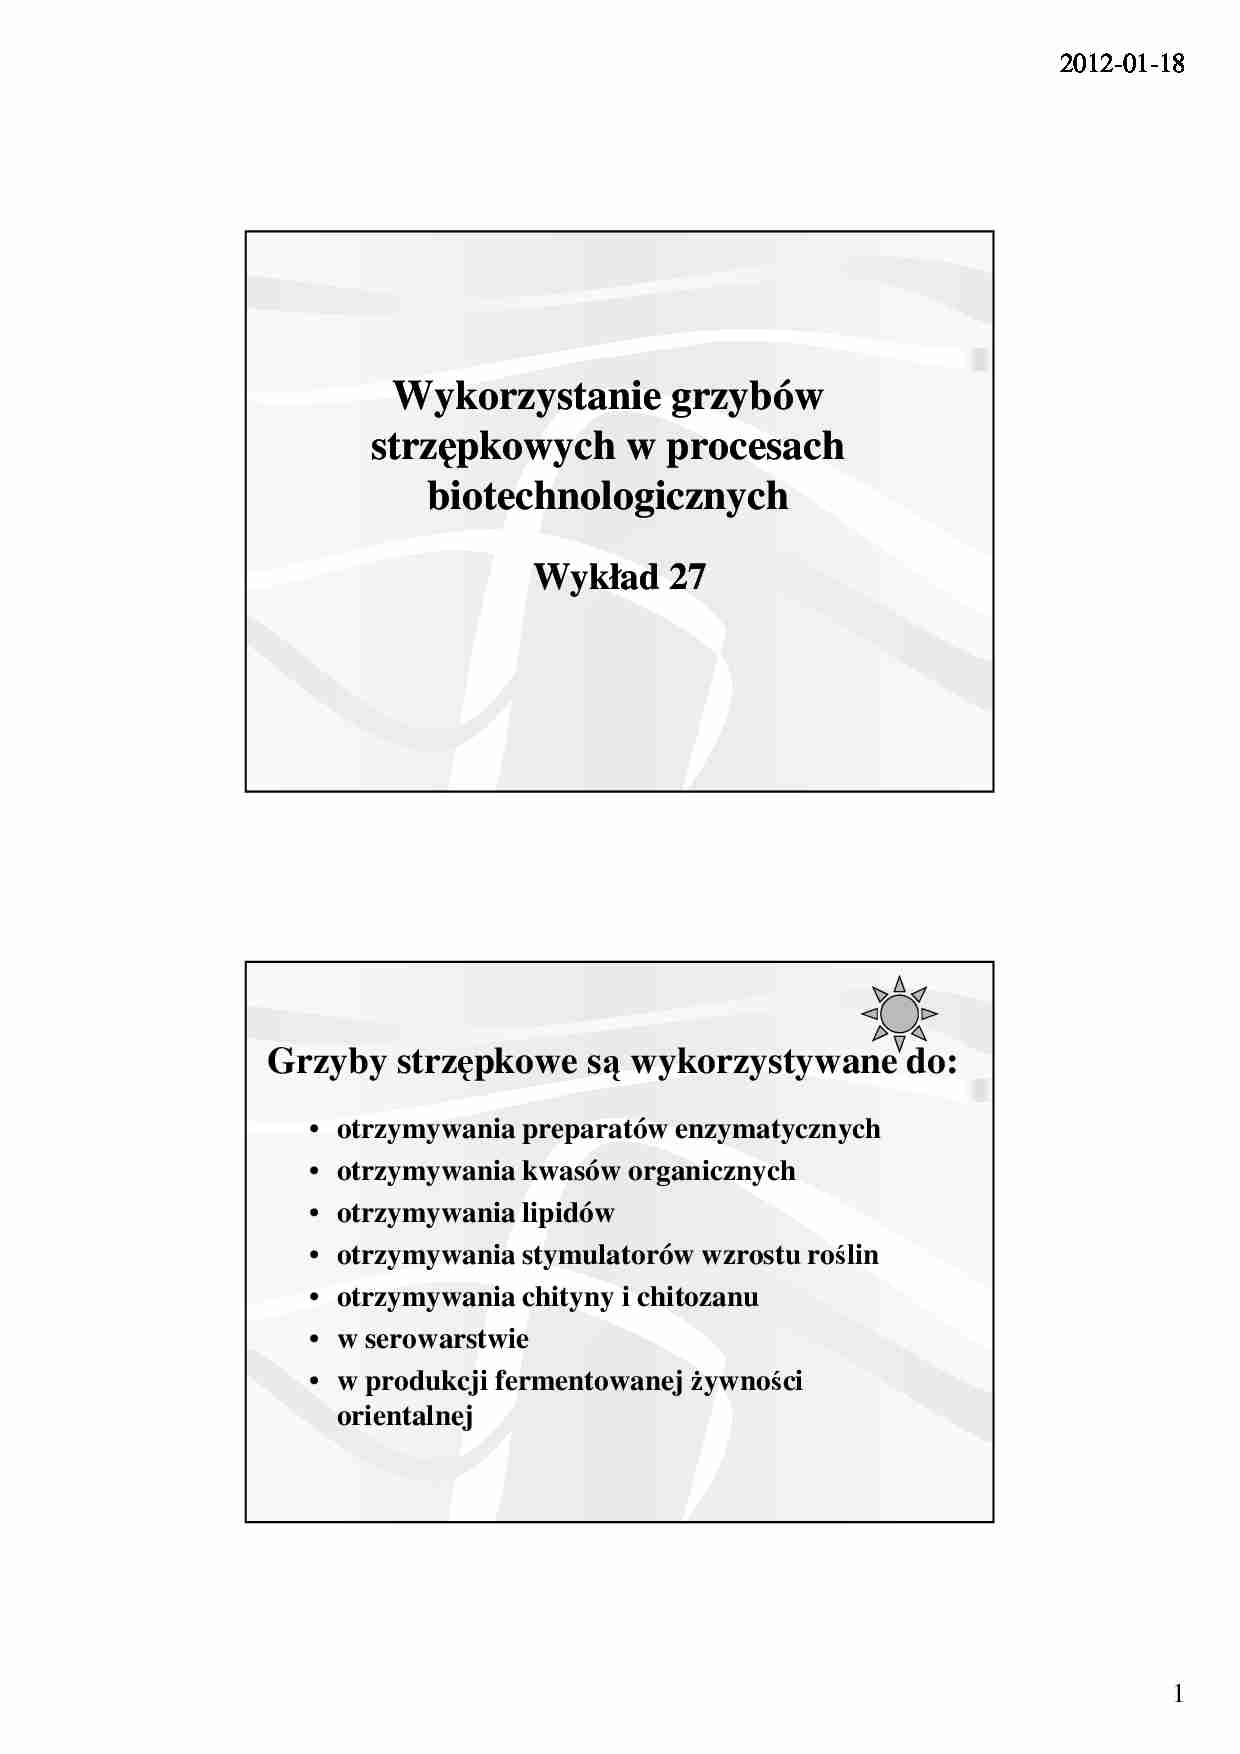 Wykorzystanie grzybów strzępkowych w procesach biotechnologicznych- wykład 27 - strona 1